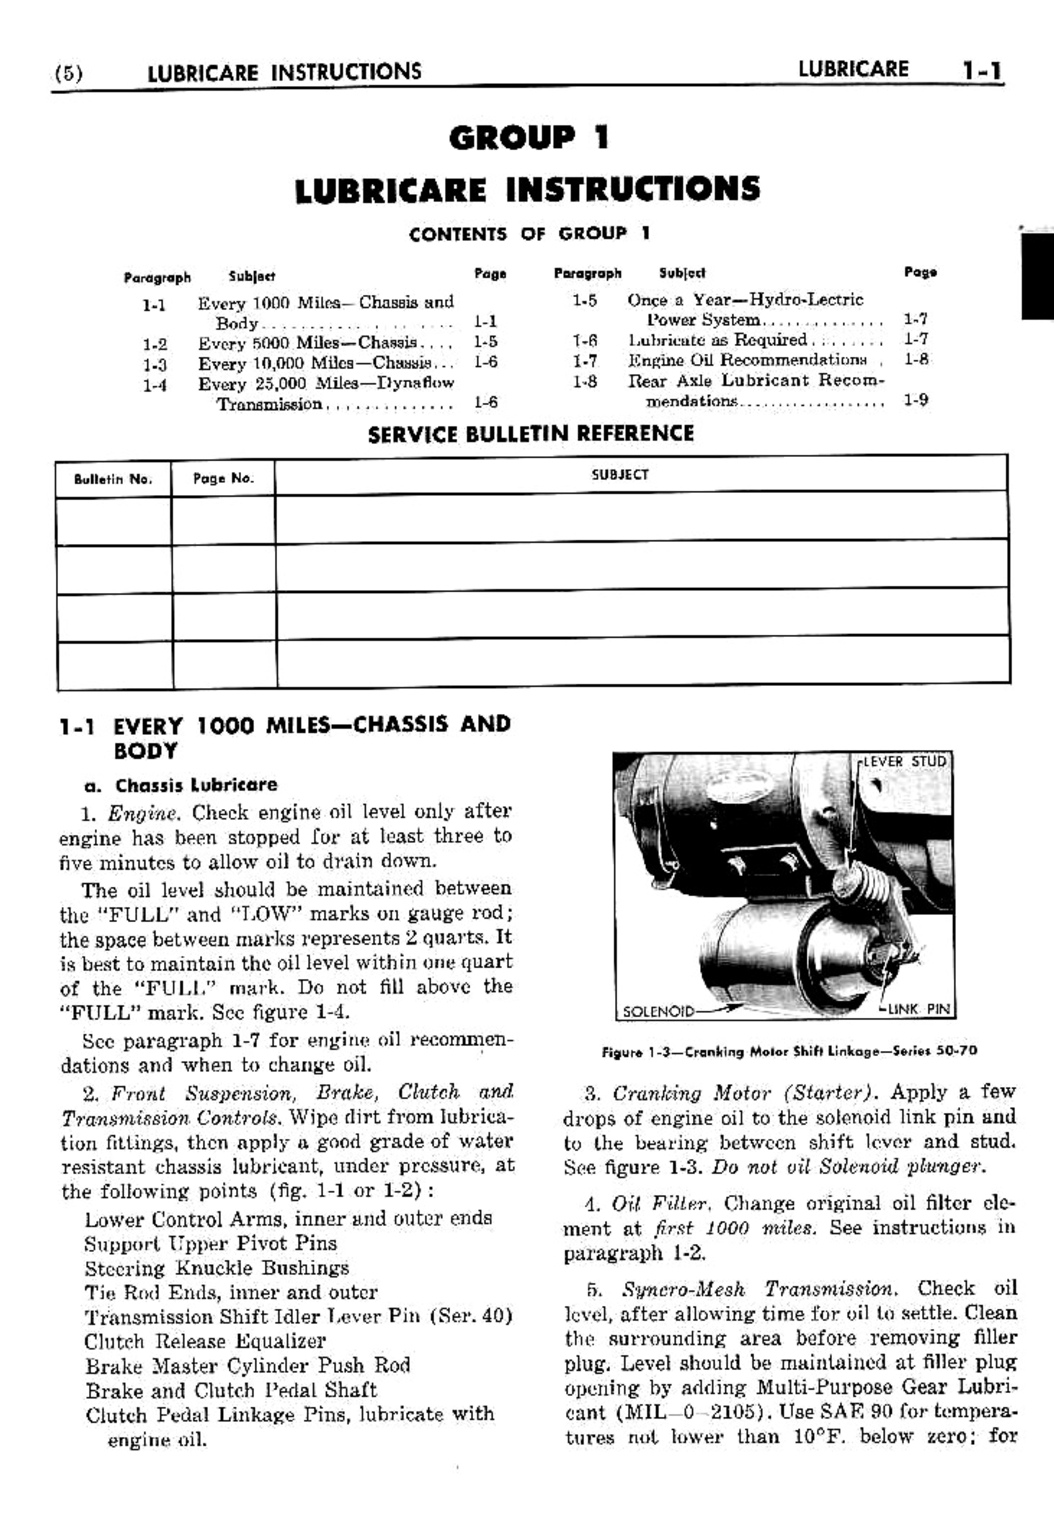 n_02 1953 Buick Shop Manual - Lubricare-001-001.jpg